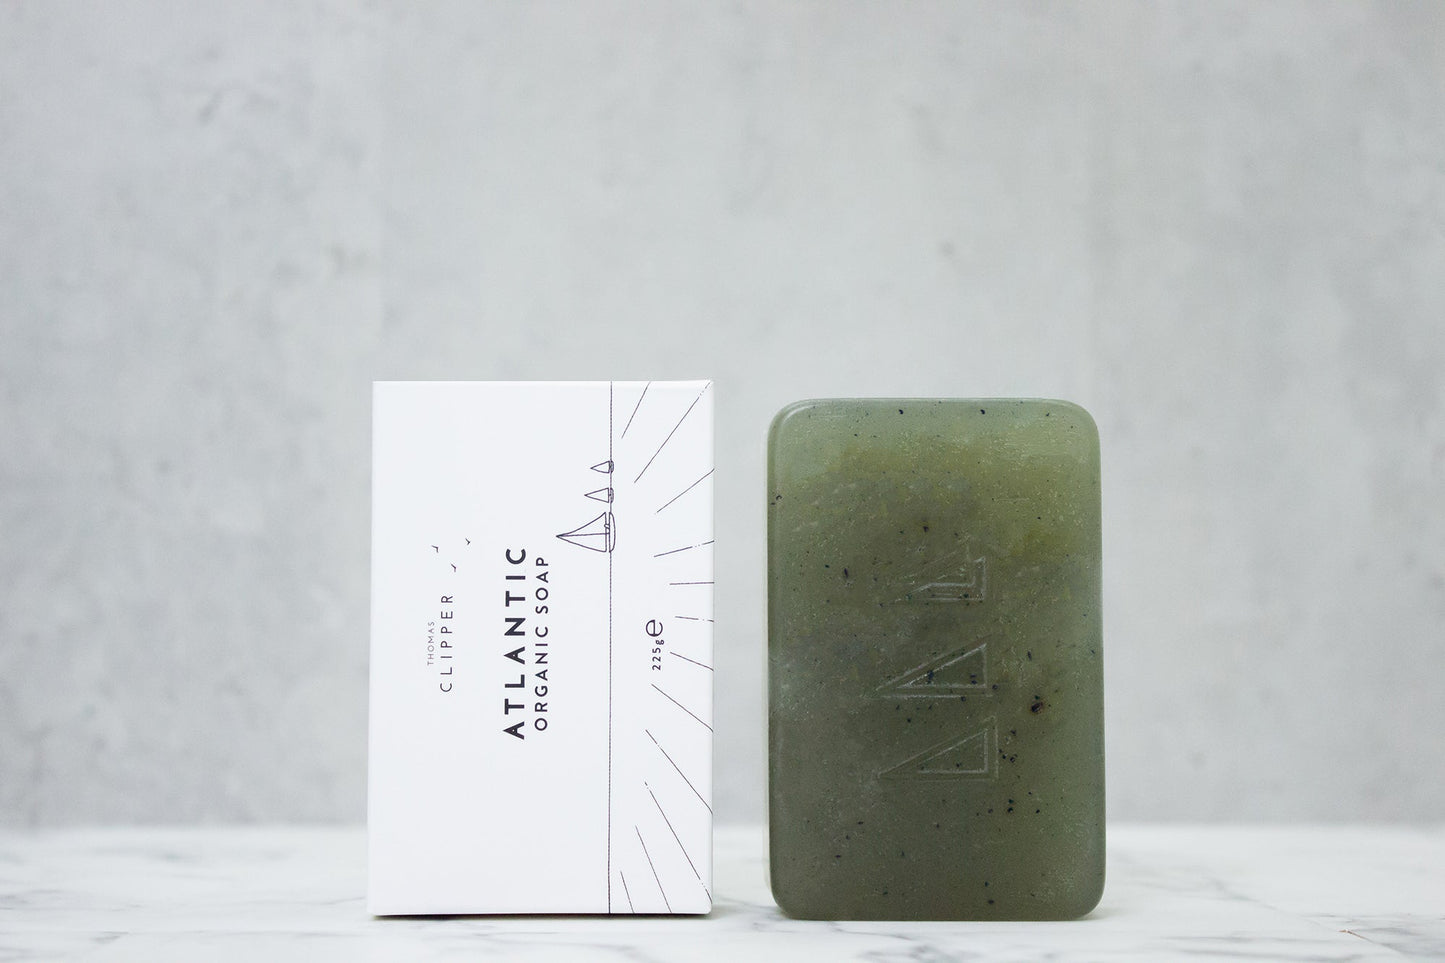 Atlantic Organic Soap Set | 4 Bars